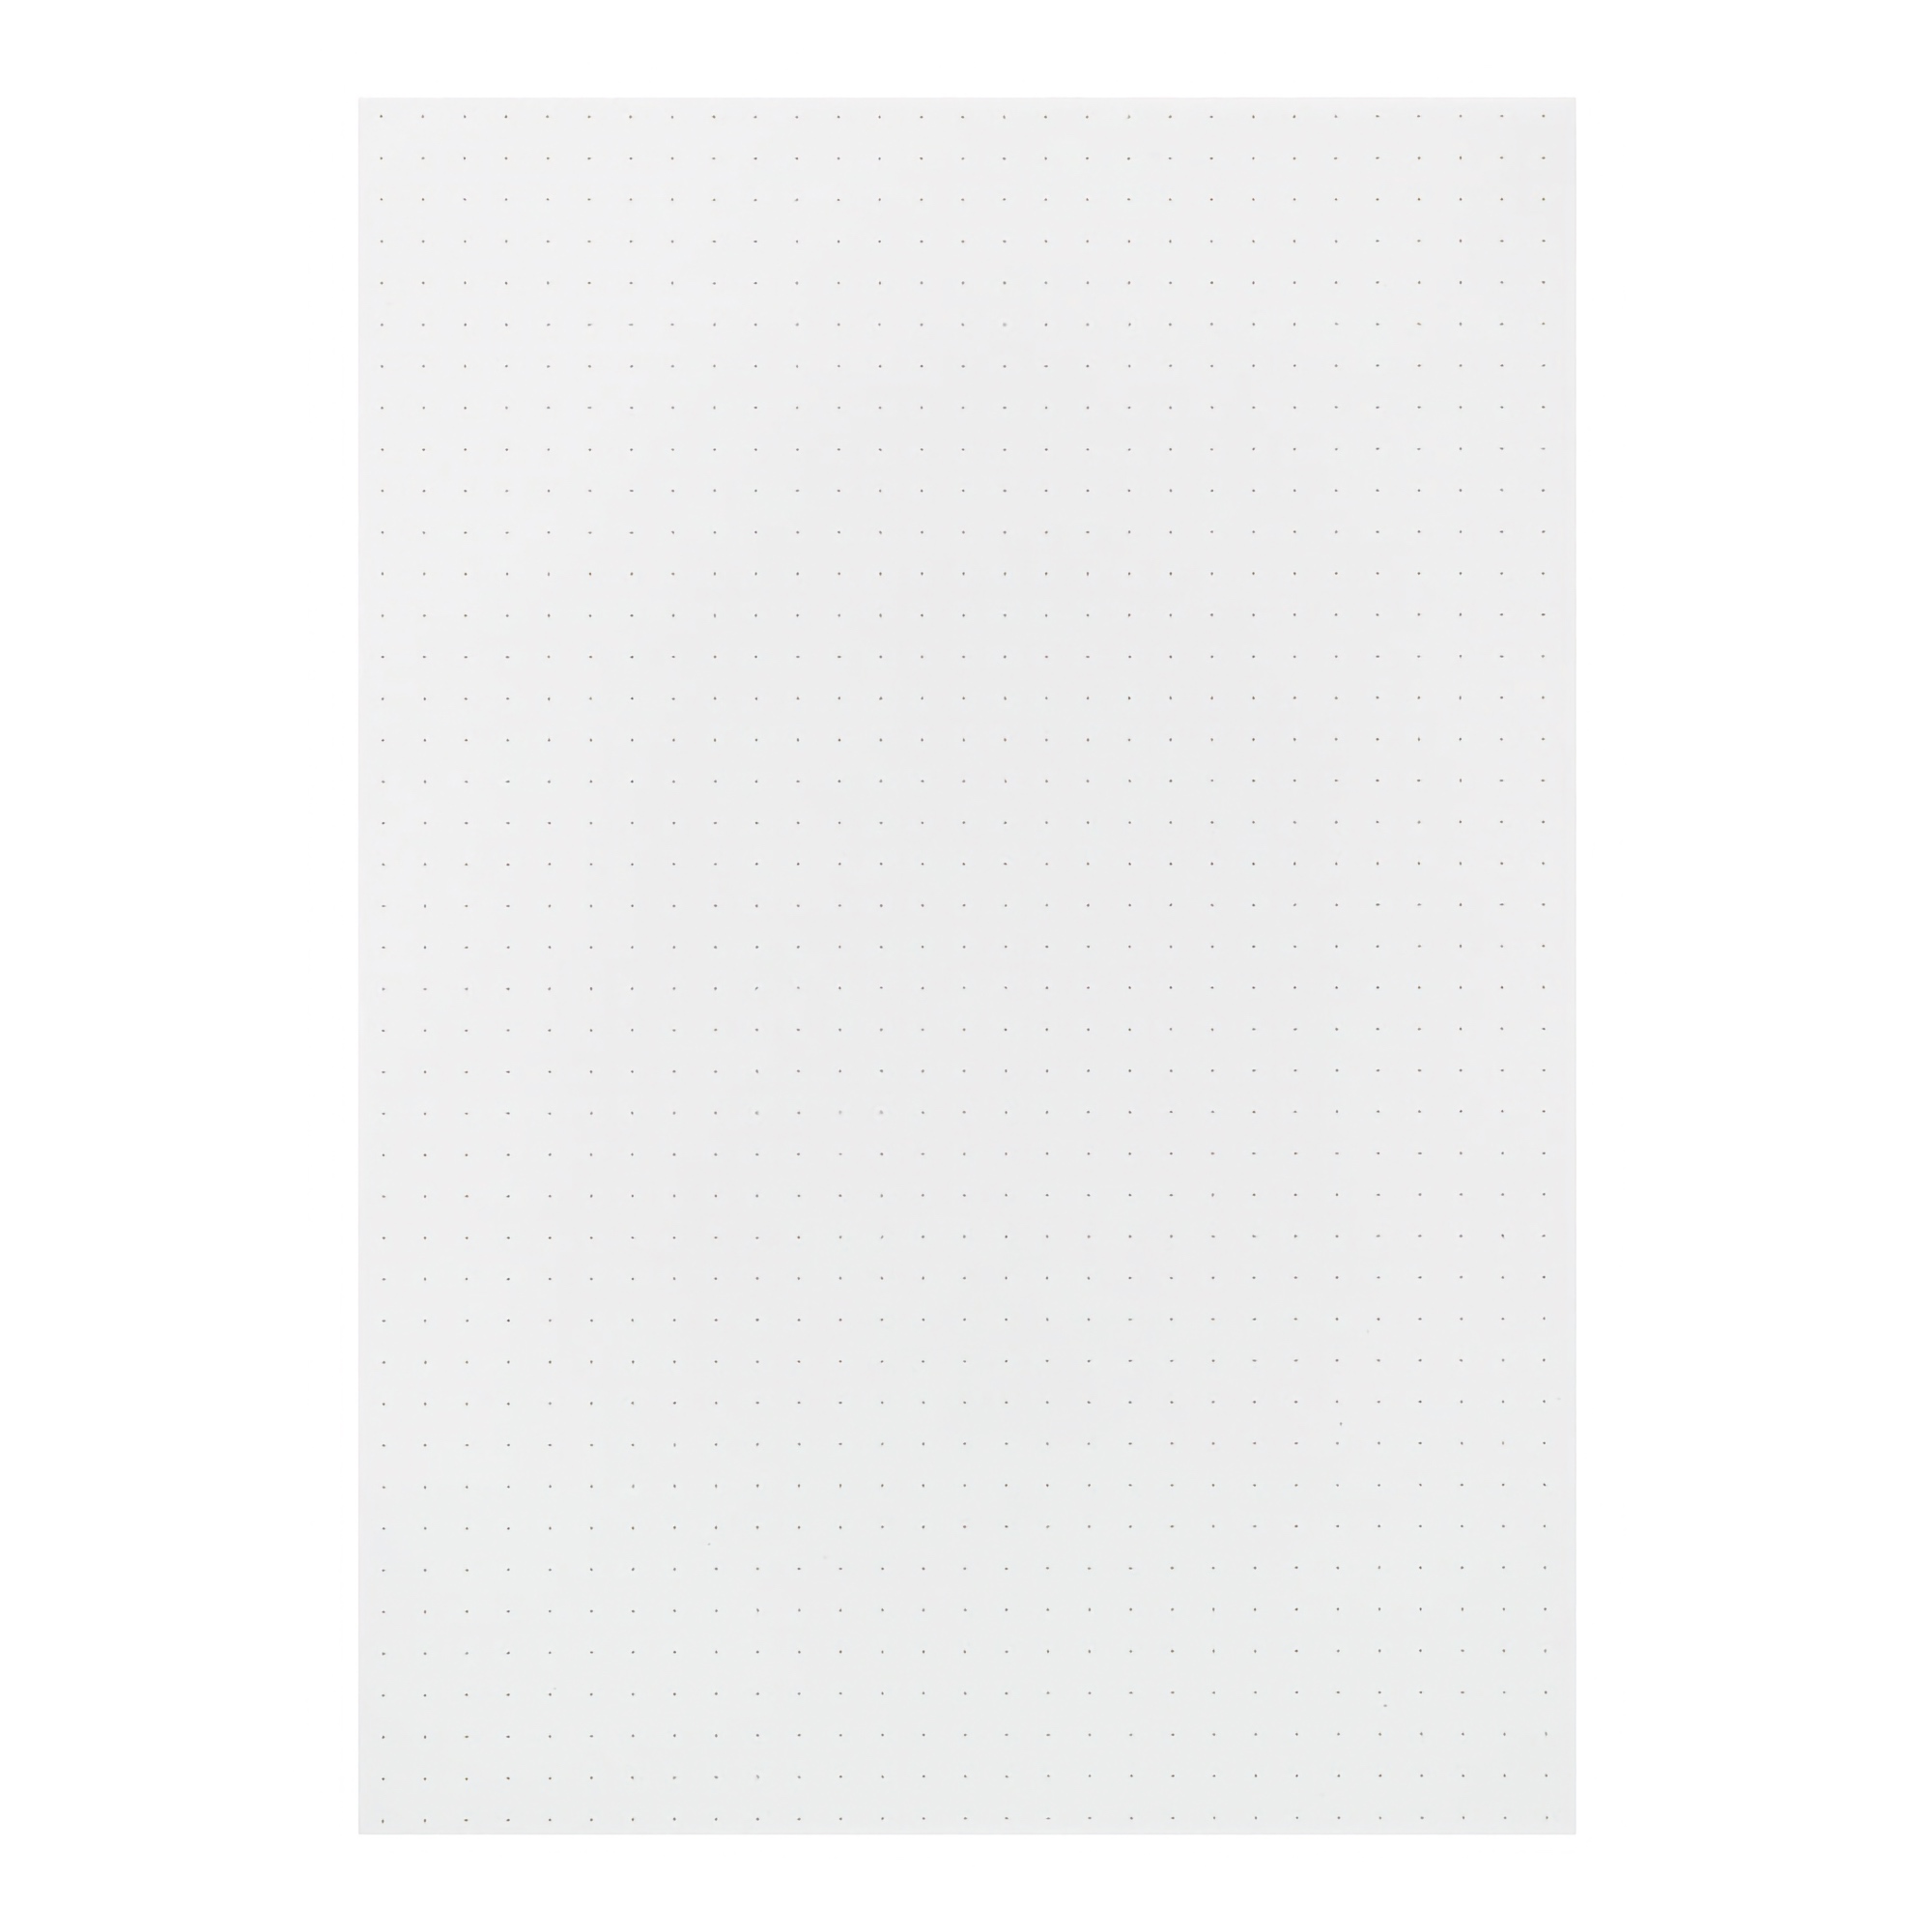 Midori Color Dot Grid Paper Pad A5 White